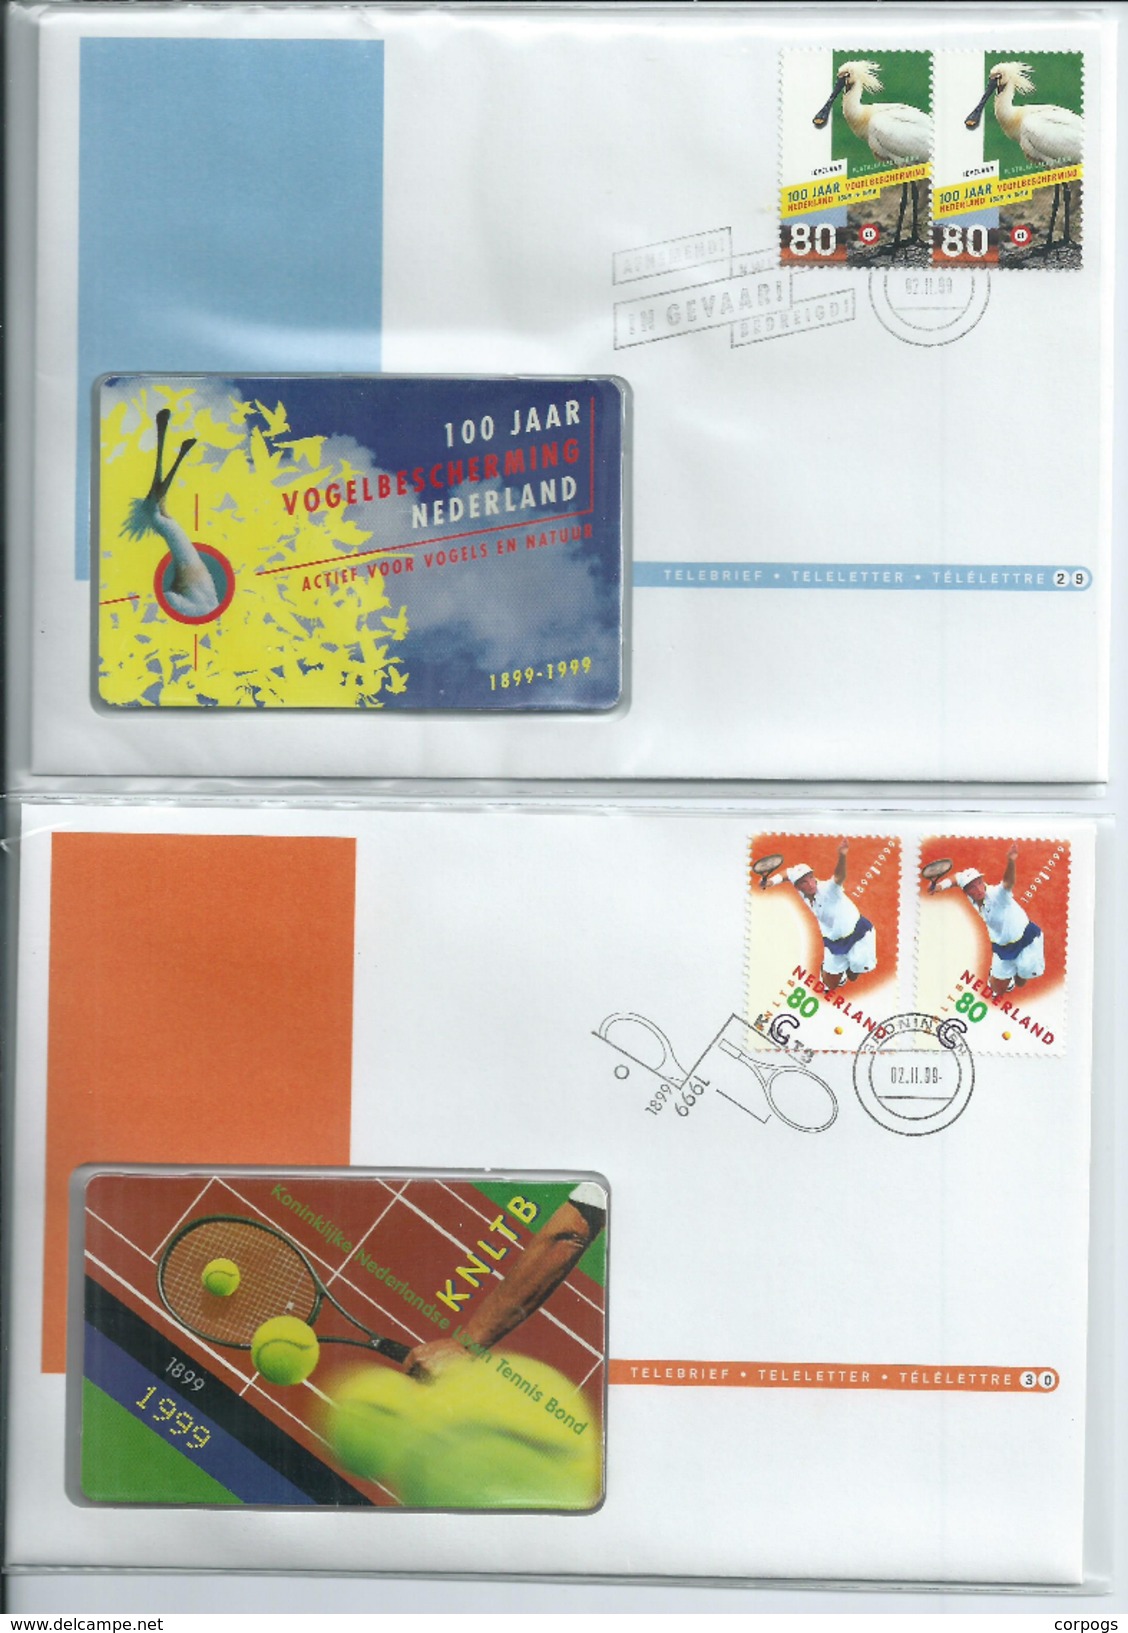 Complete set Telebrieven 1 / 36 ongebruikte telefoonkaart + zegel phonecard on letter (not Used) + stamp canceld